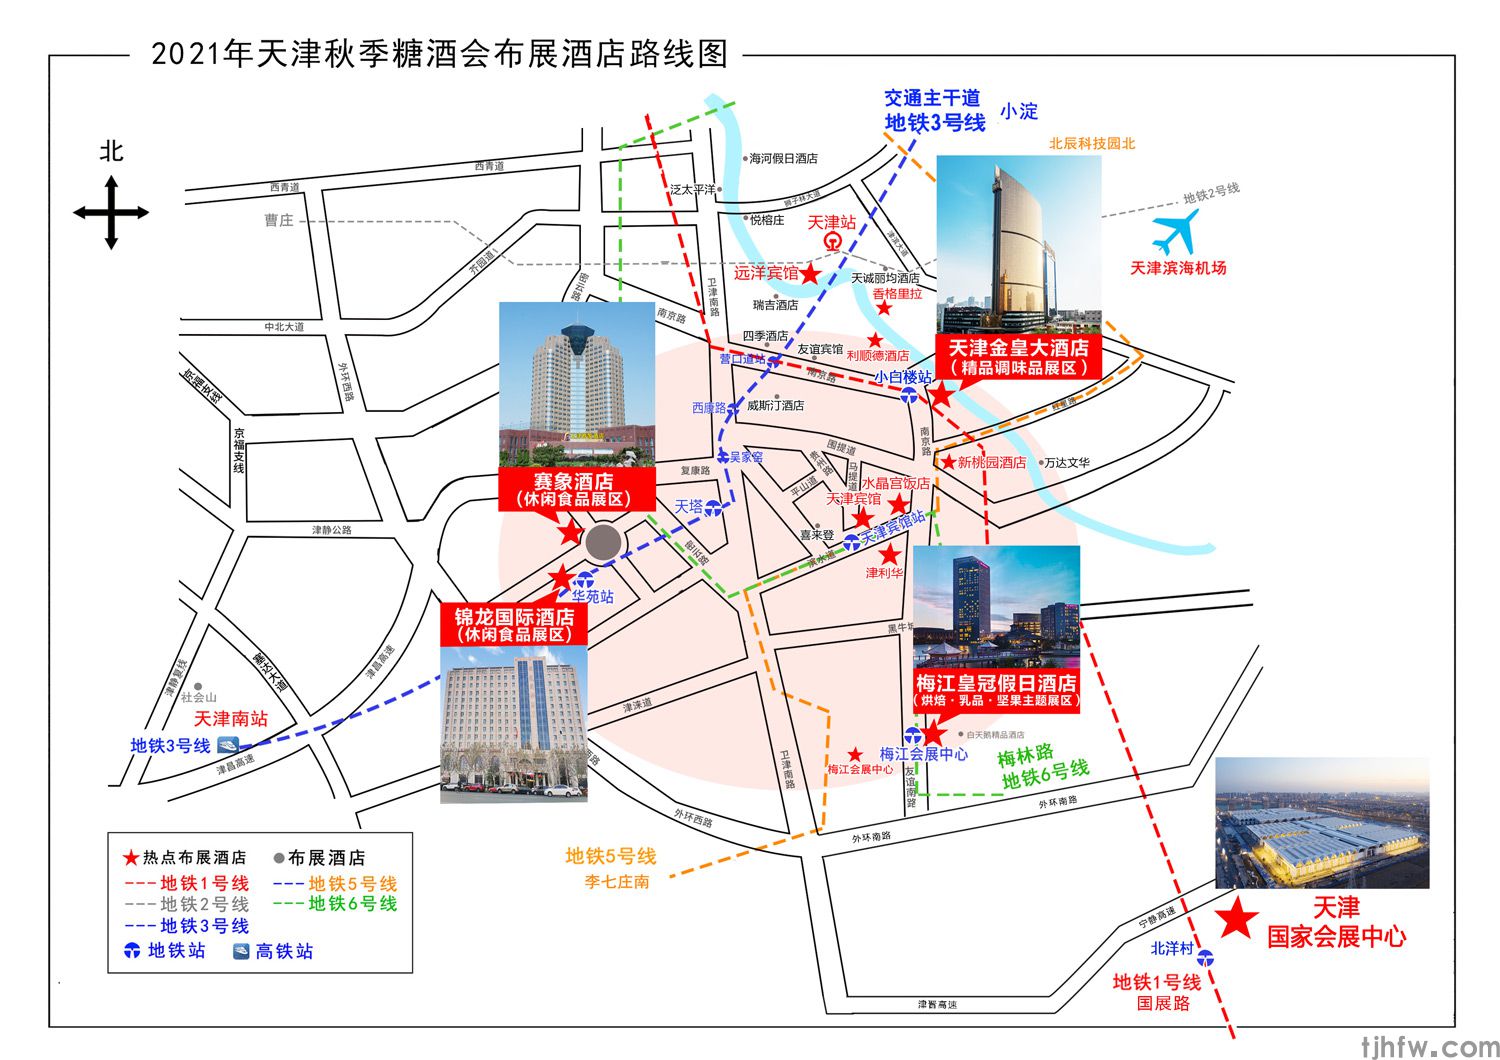 锦龙国际酒店 天津秋季糖酒会休闲食品专区(图1)